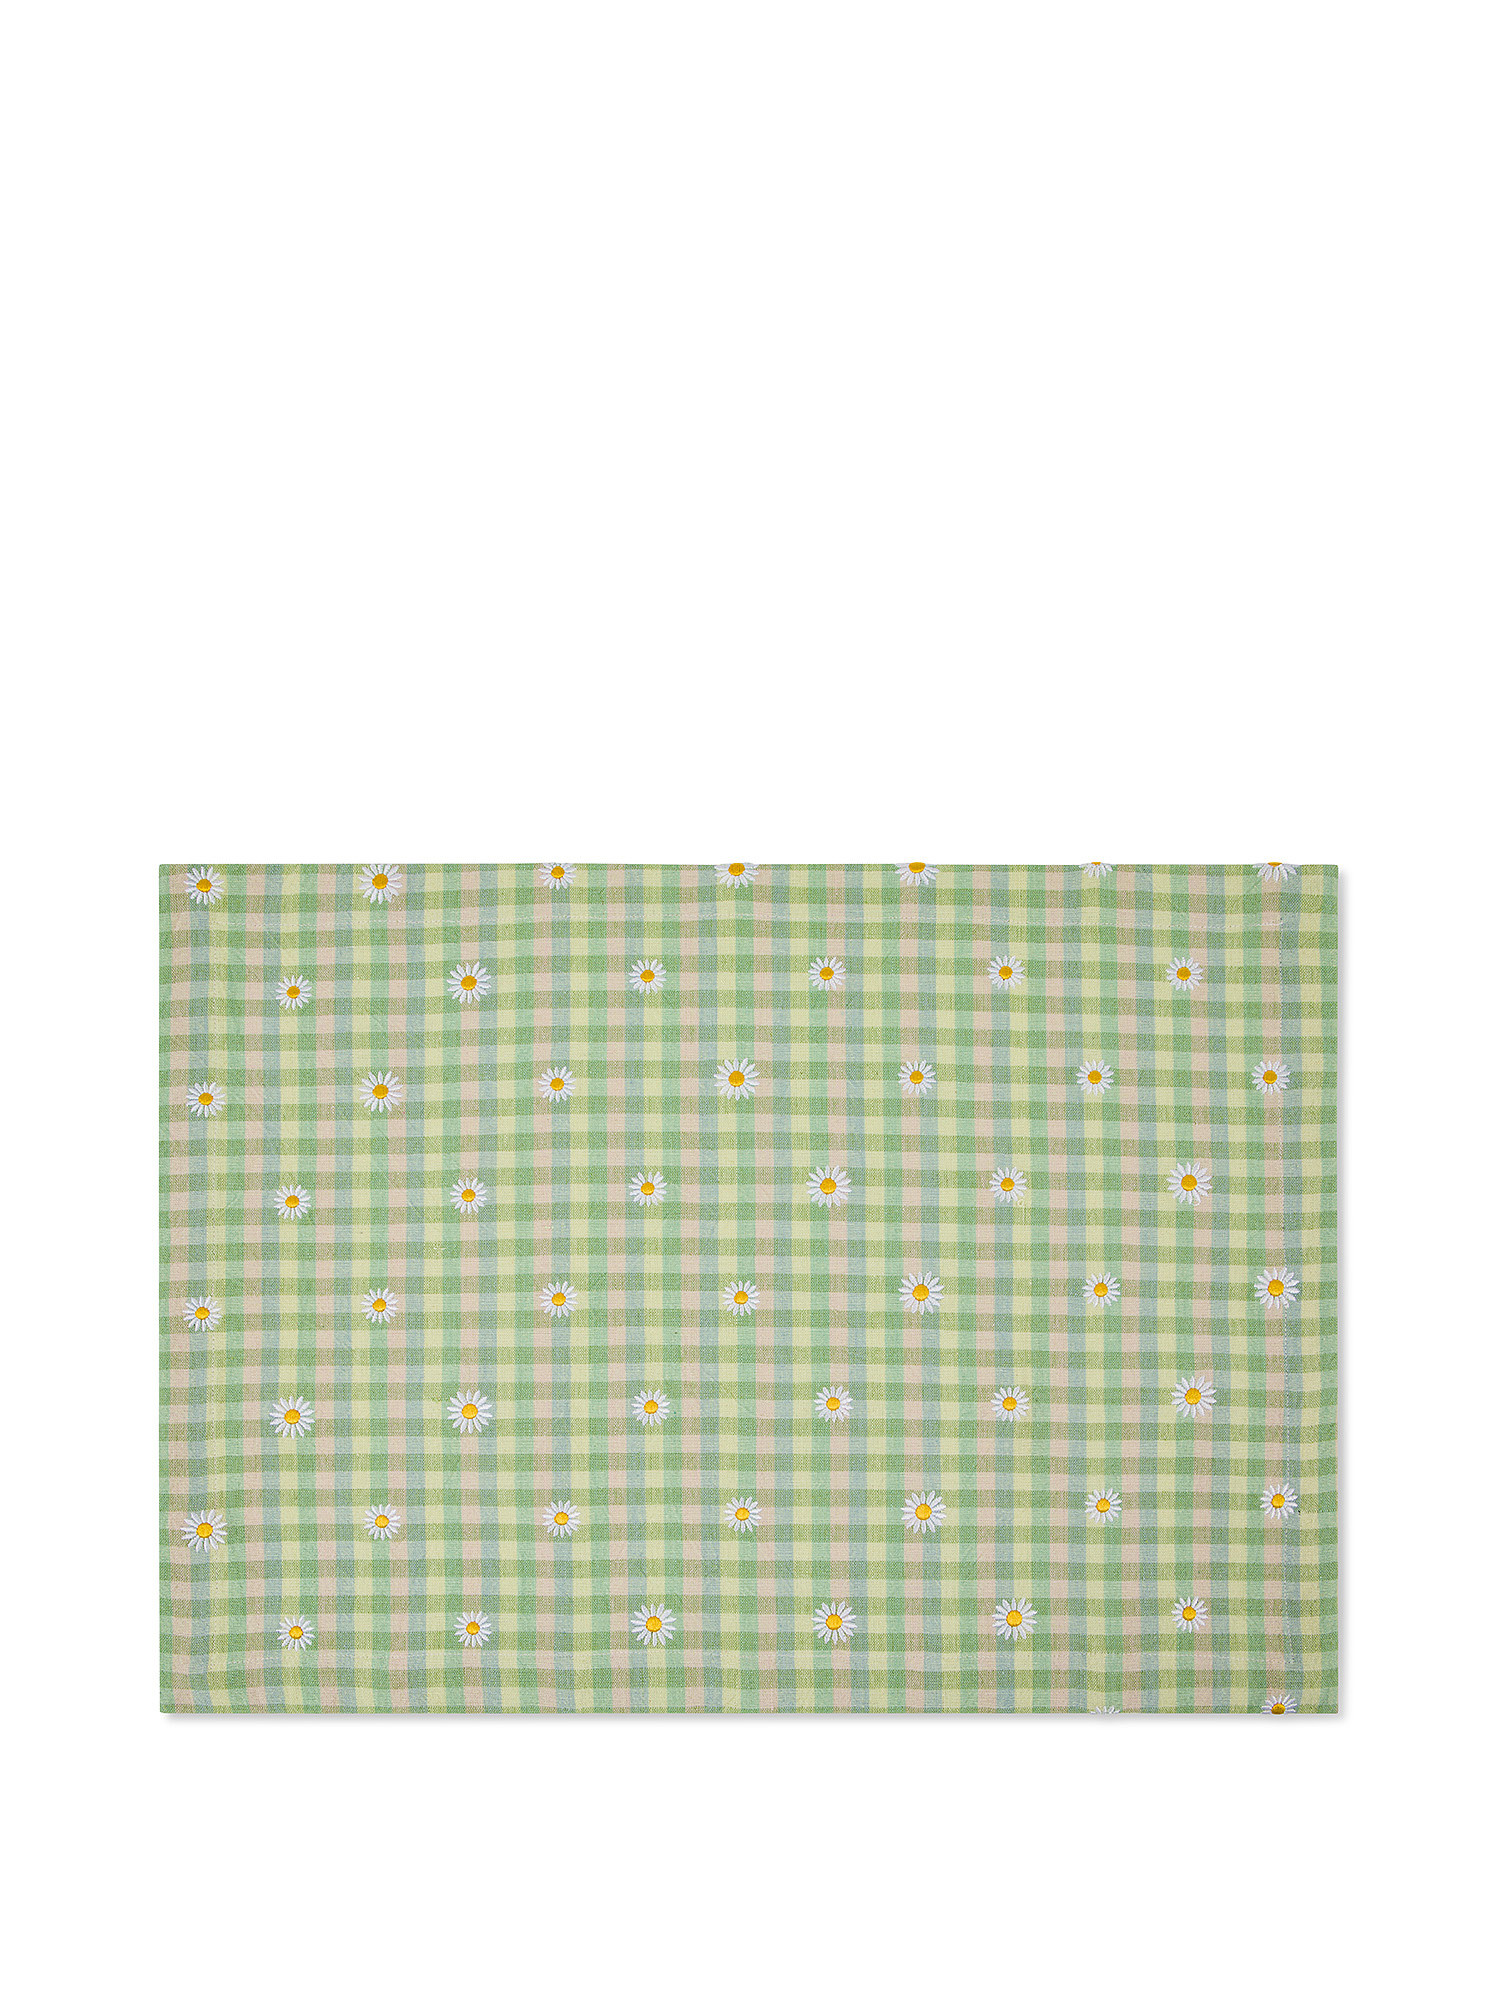 Tovaglietta puro cotone motivo vichy ricamo margherite, Verde, large image number 0